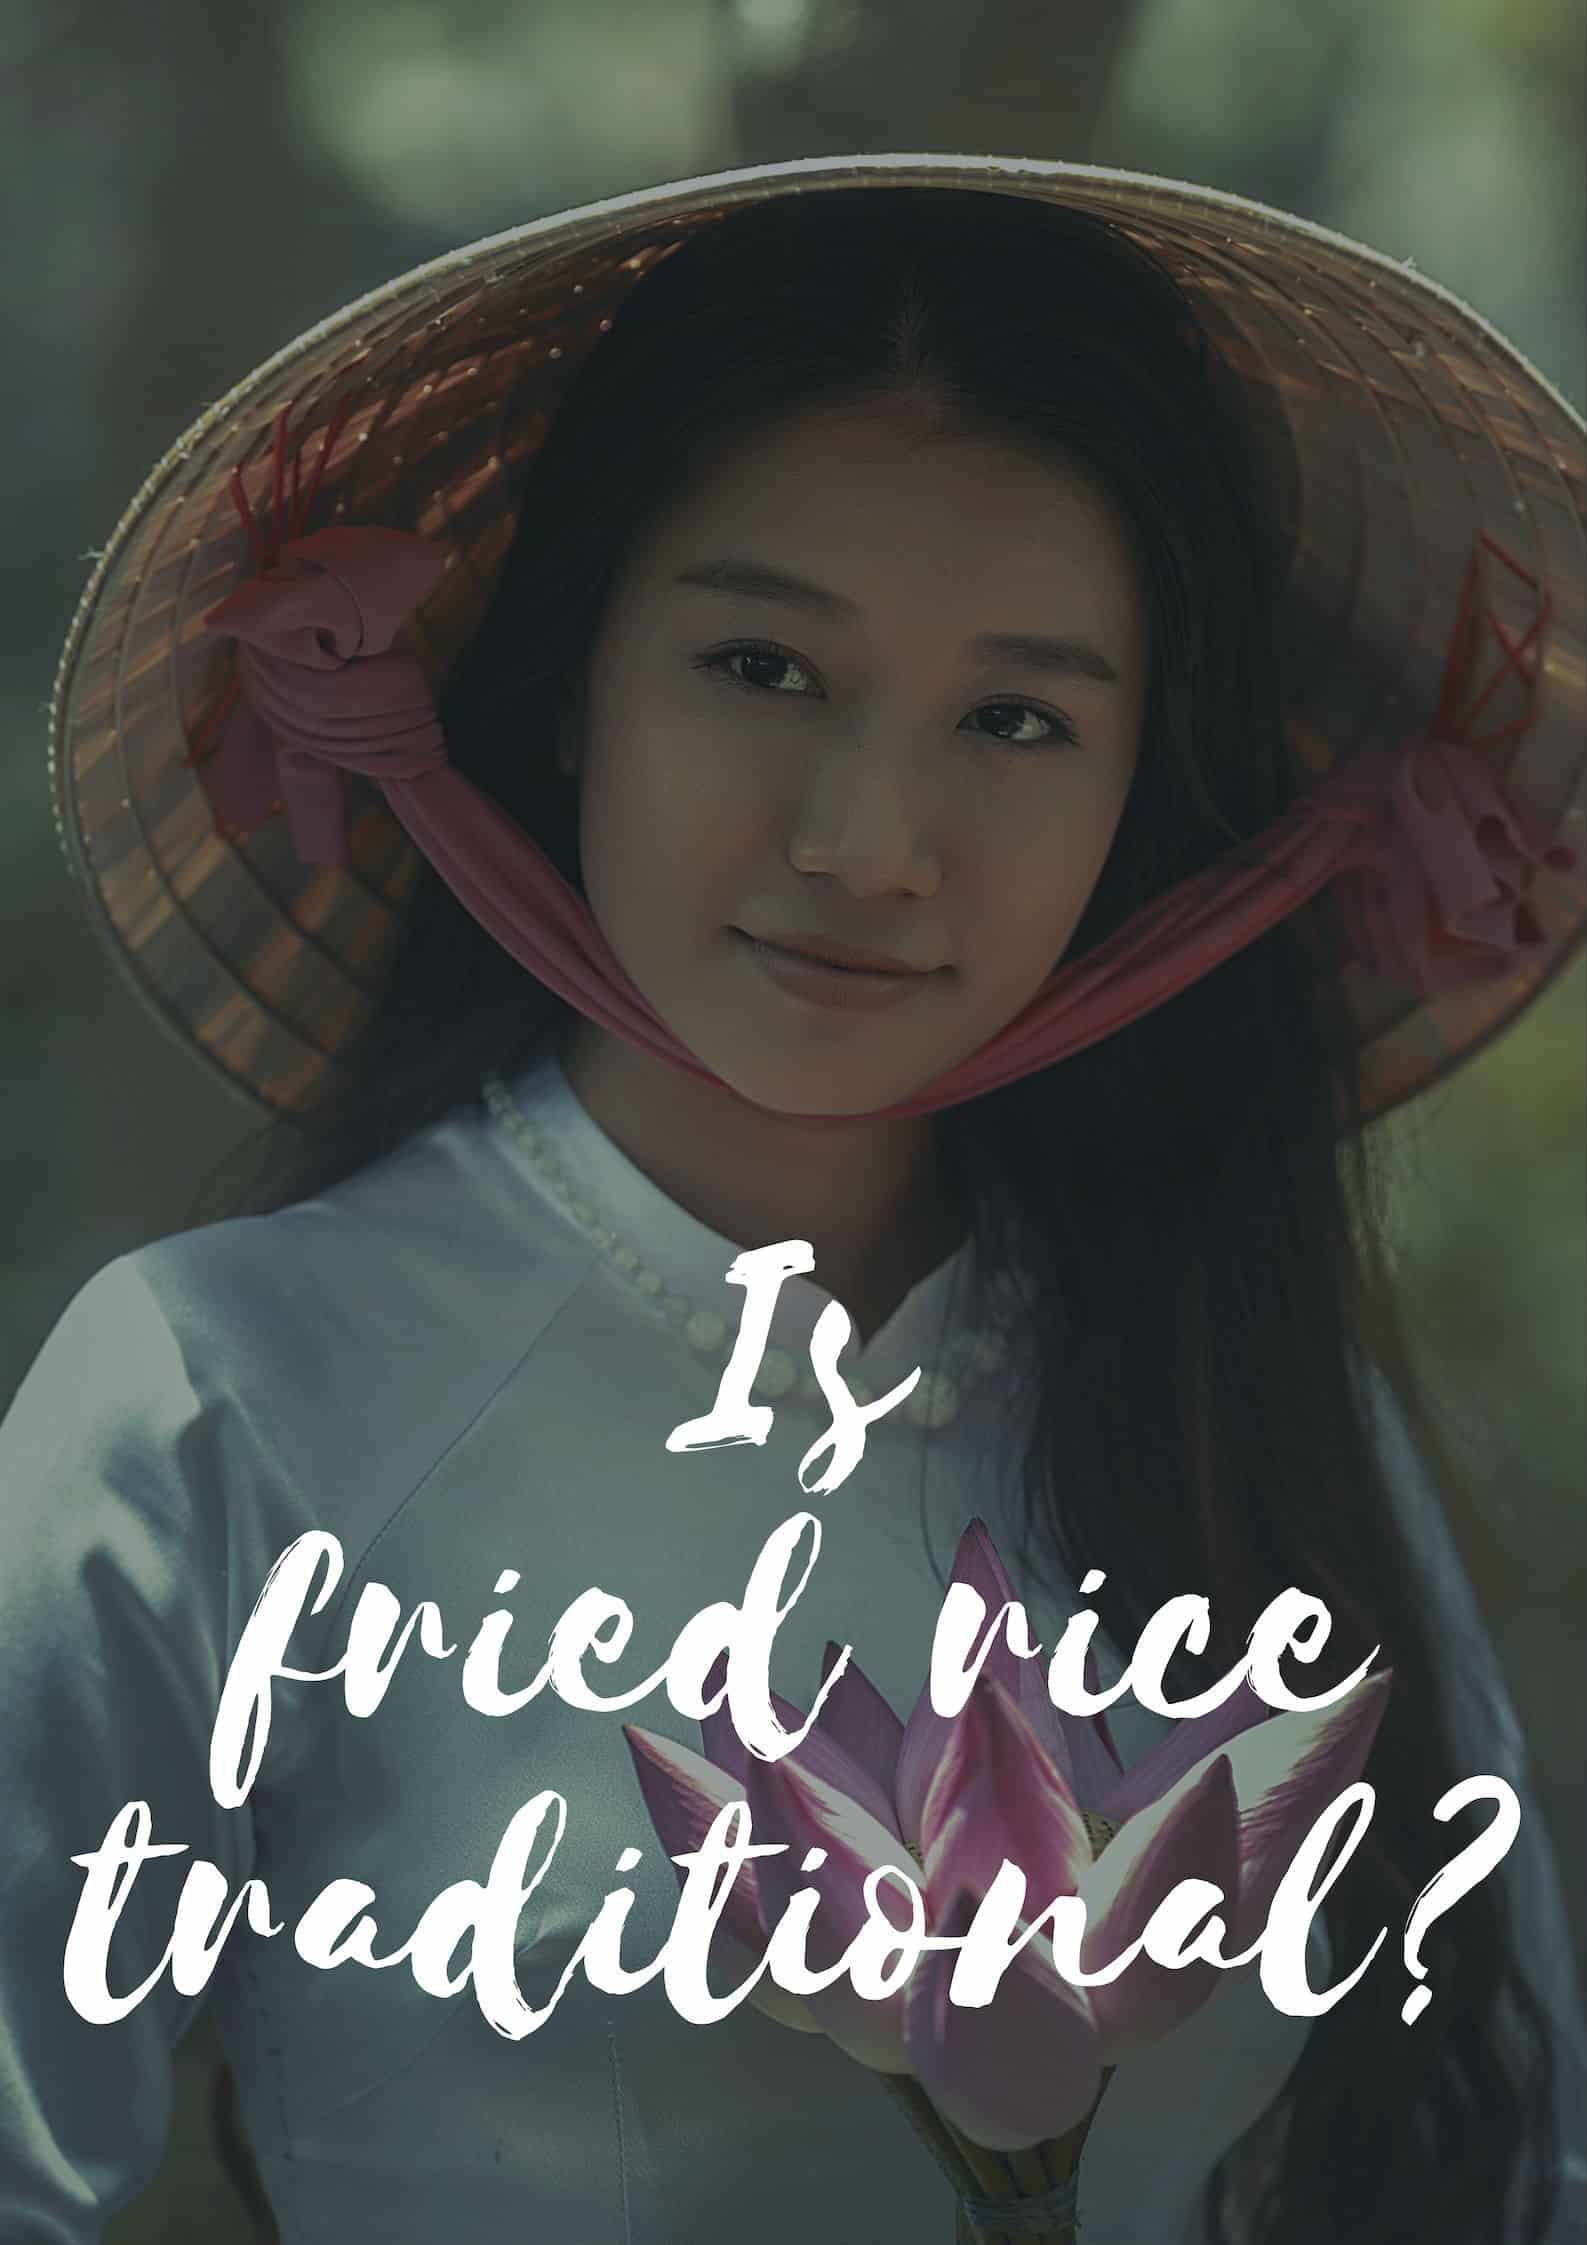 Дали пржениот ориз е традиционален